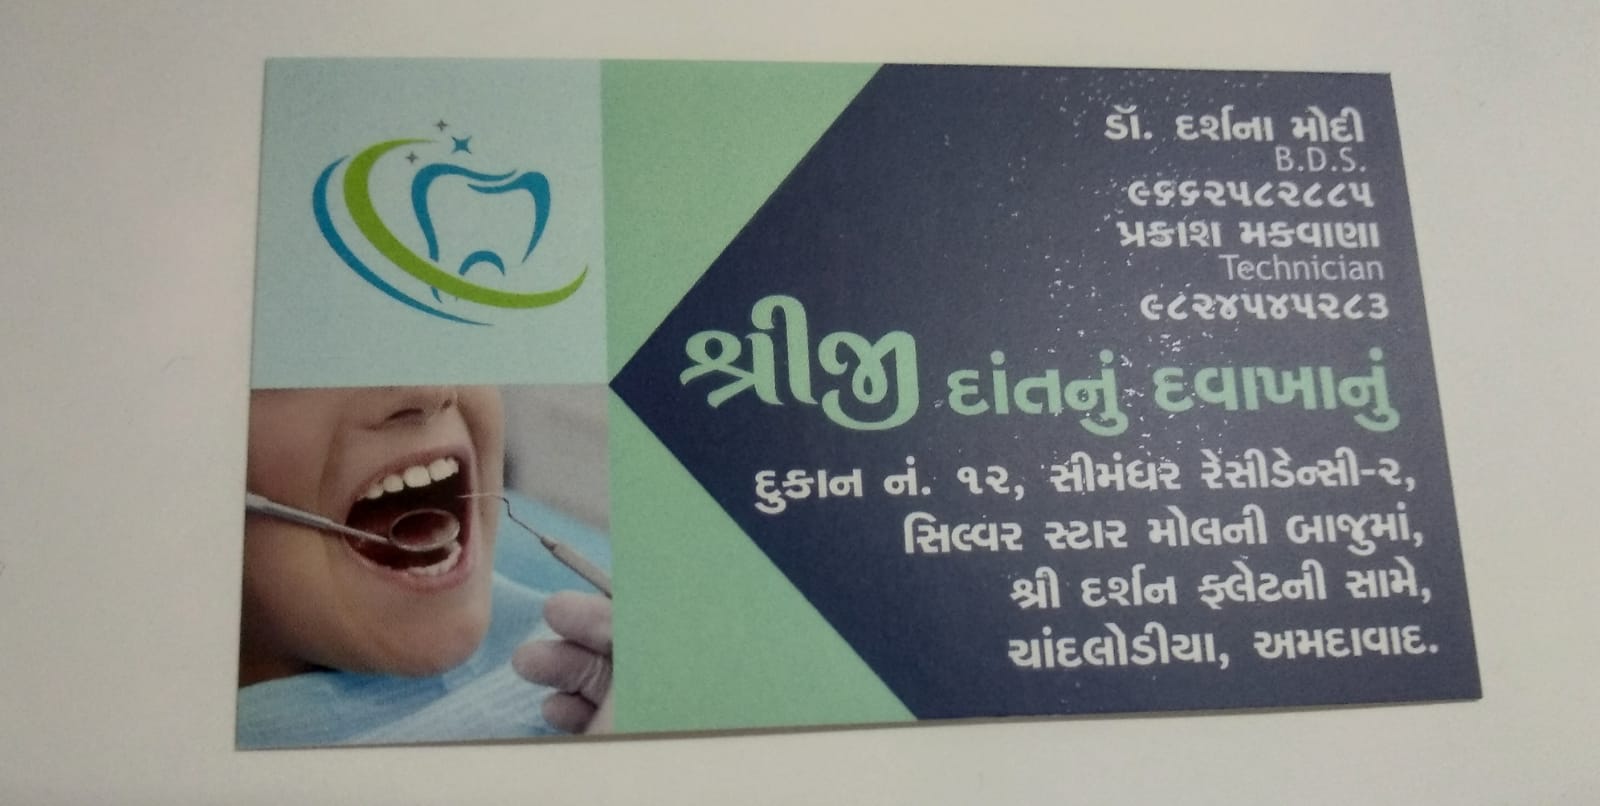 Dental clinic near me